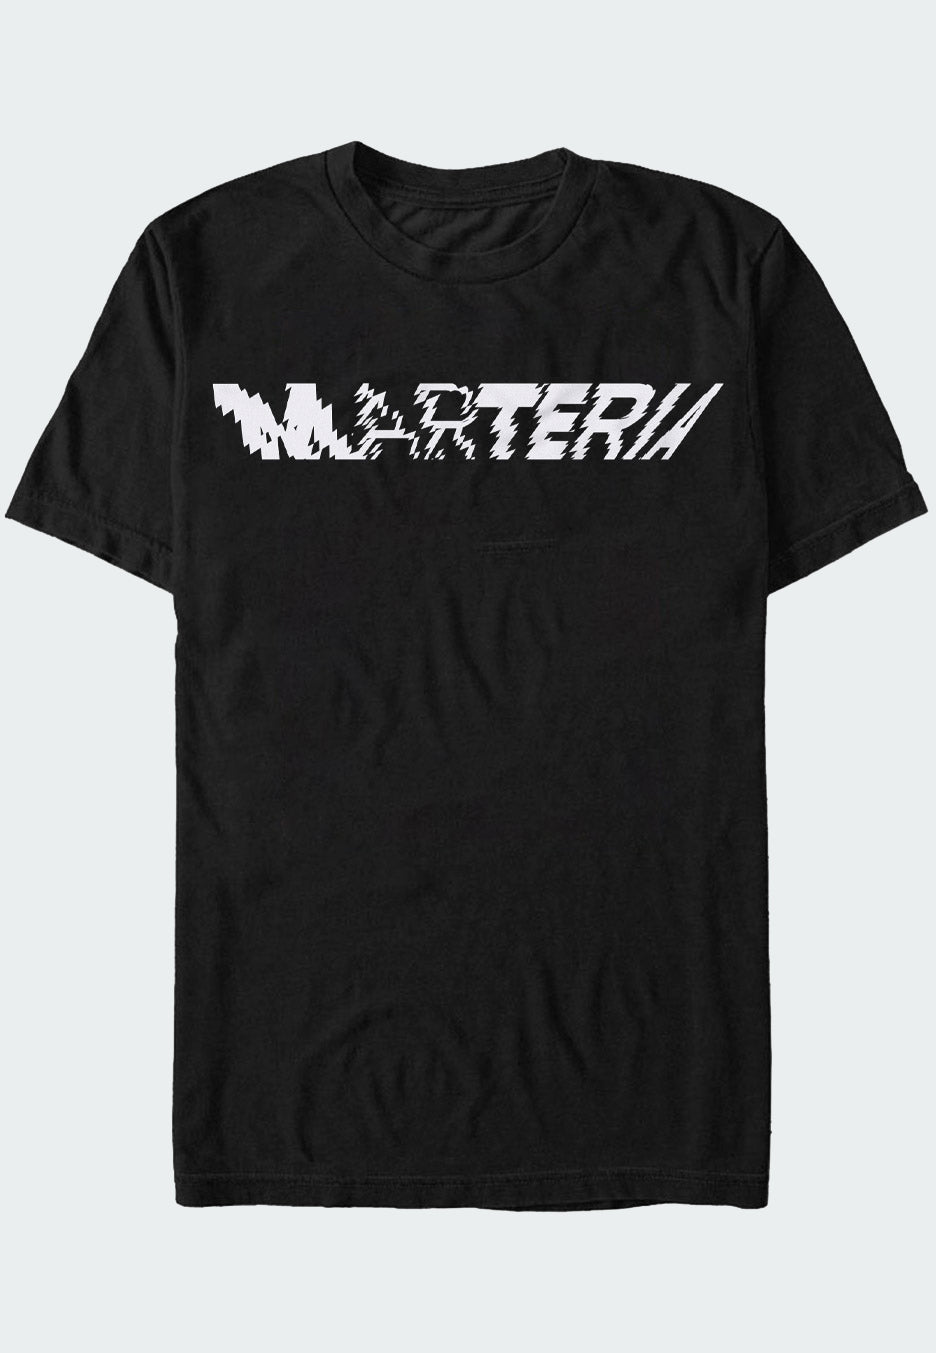 Marteria - Logo - T-Shirt